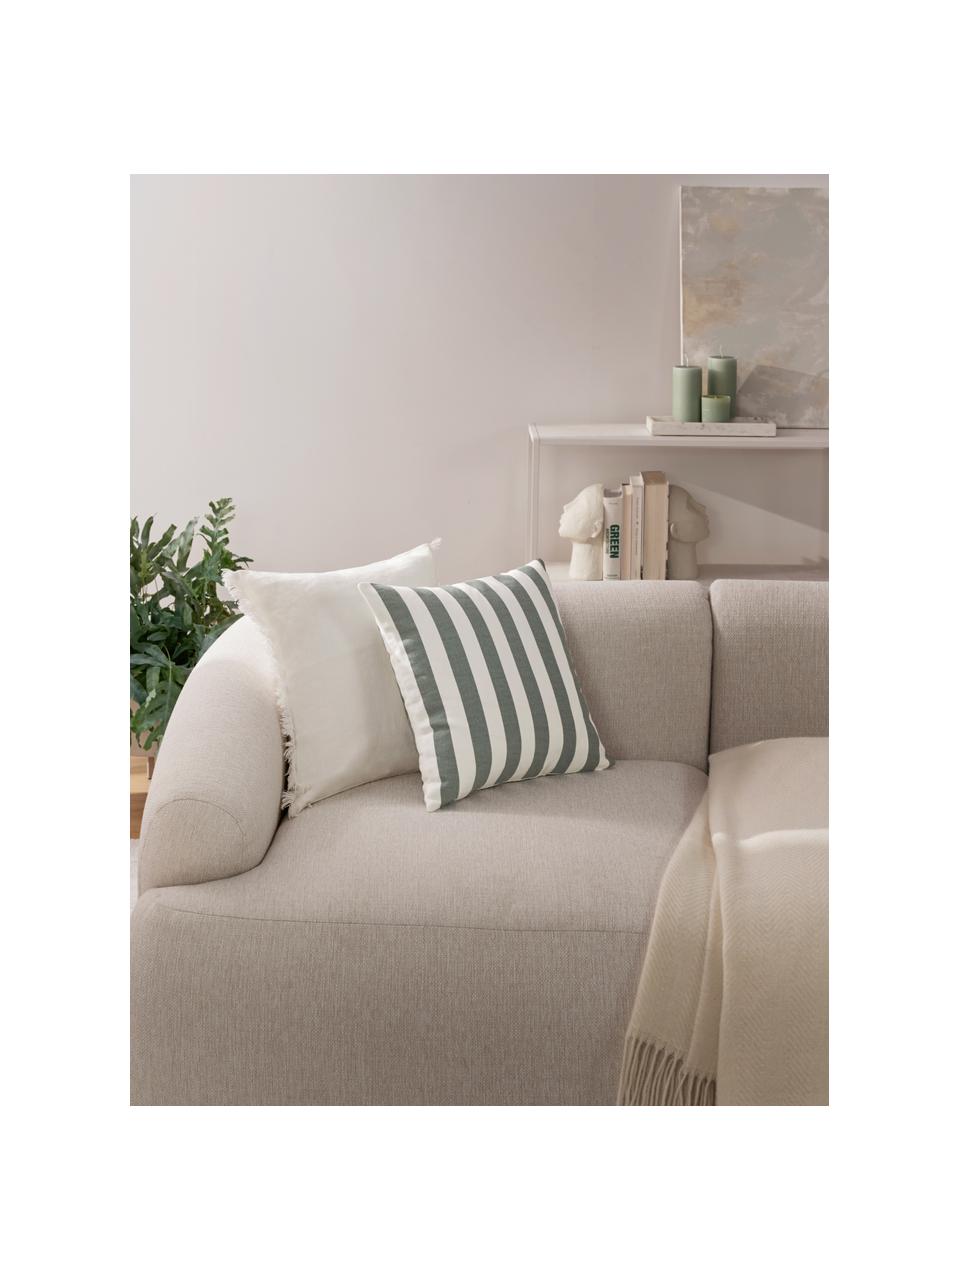 Poszewka na poduszkę Tiomn, 100% bawełna, Zielony, biały, S 40 x D 40 cm